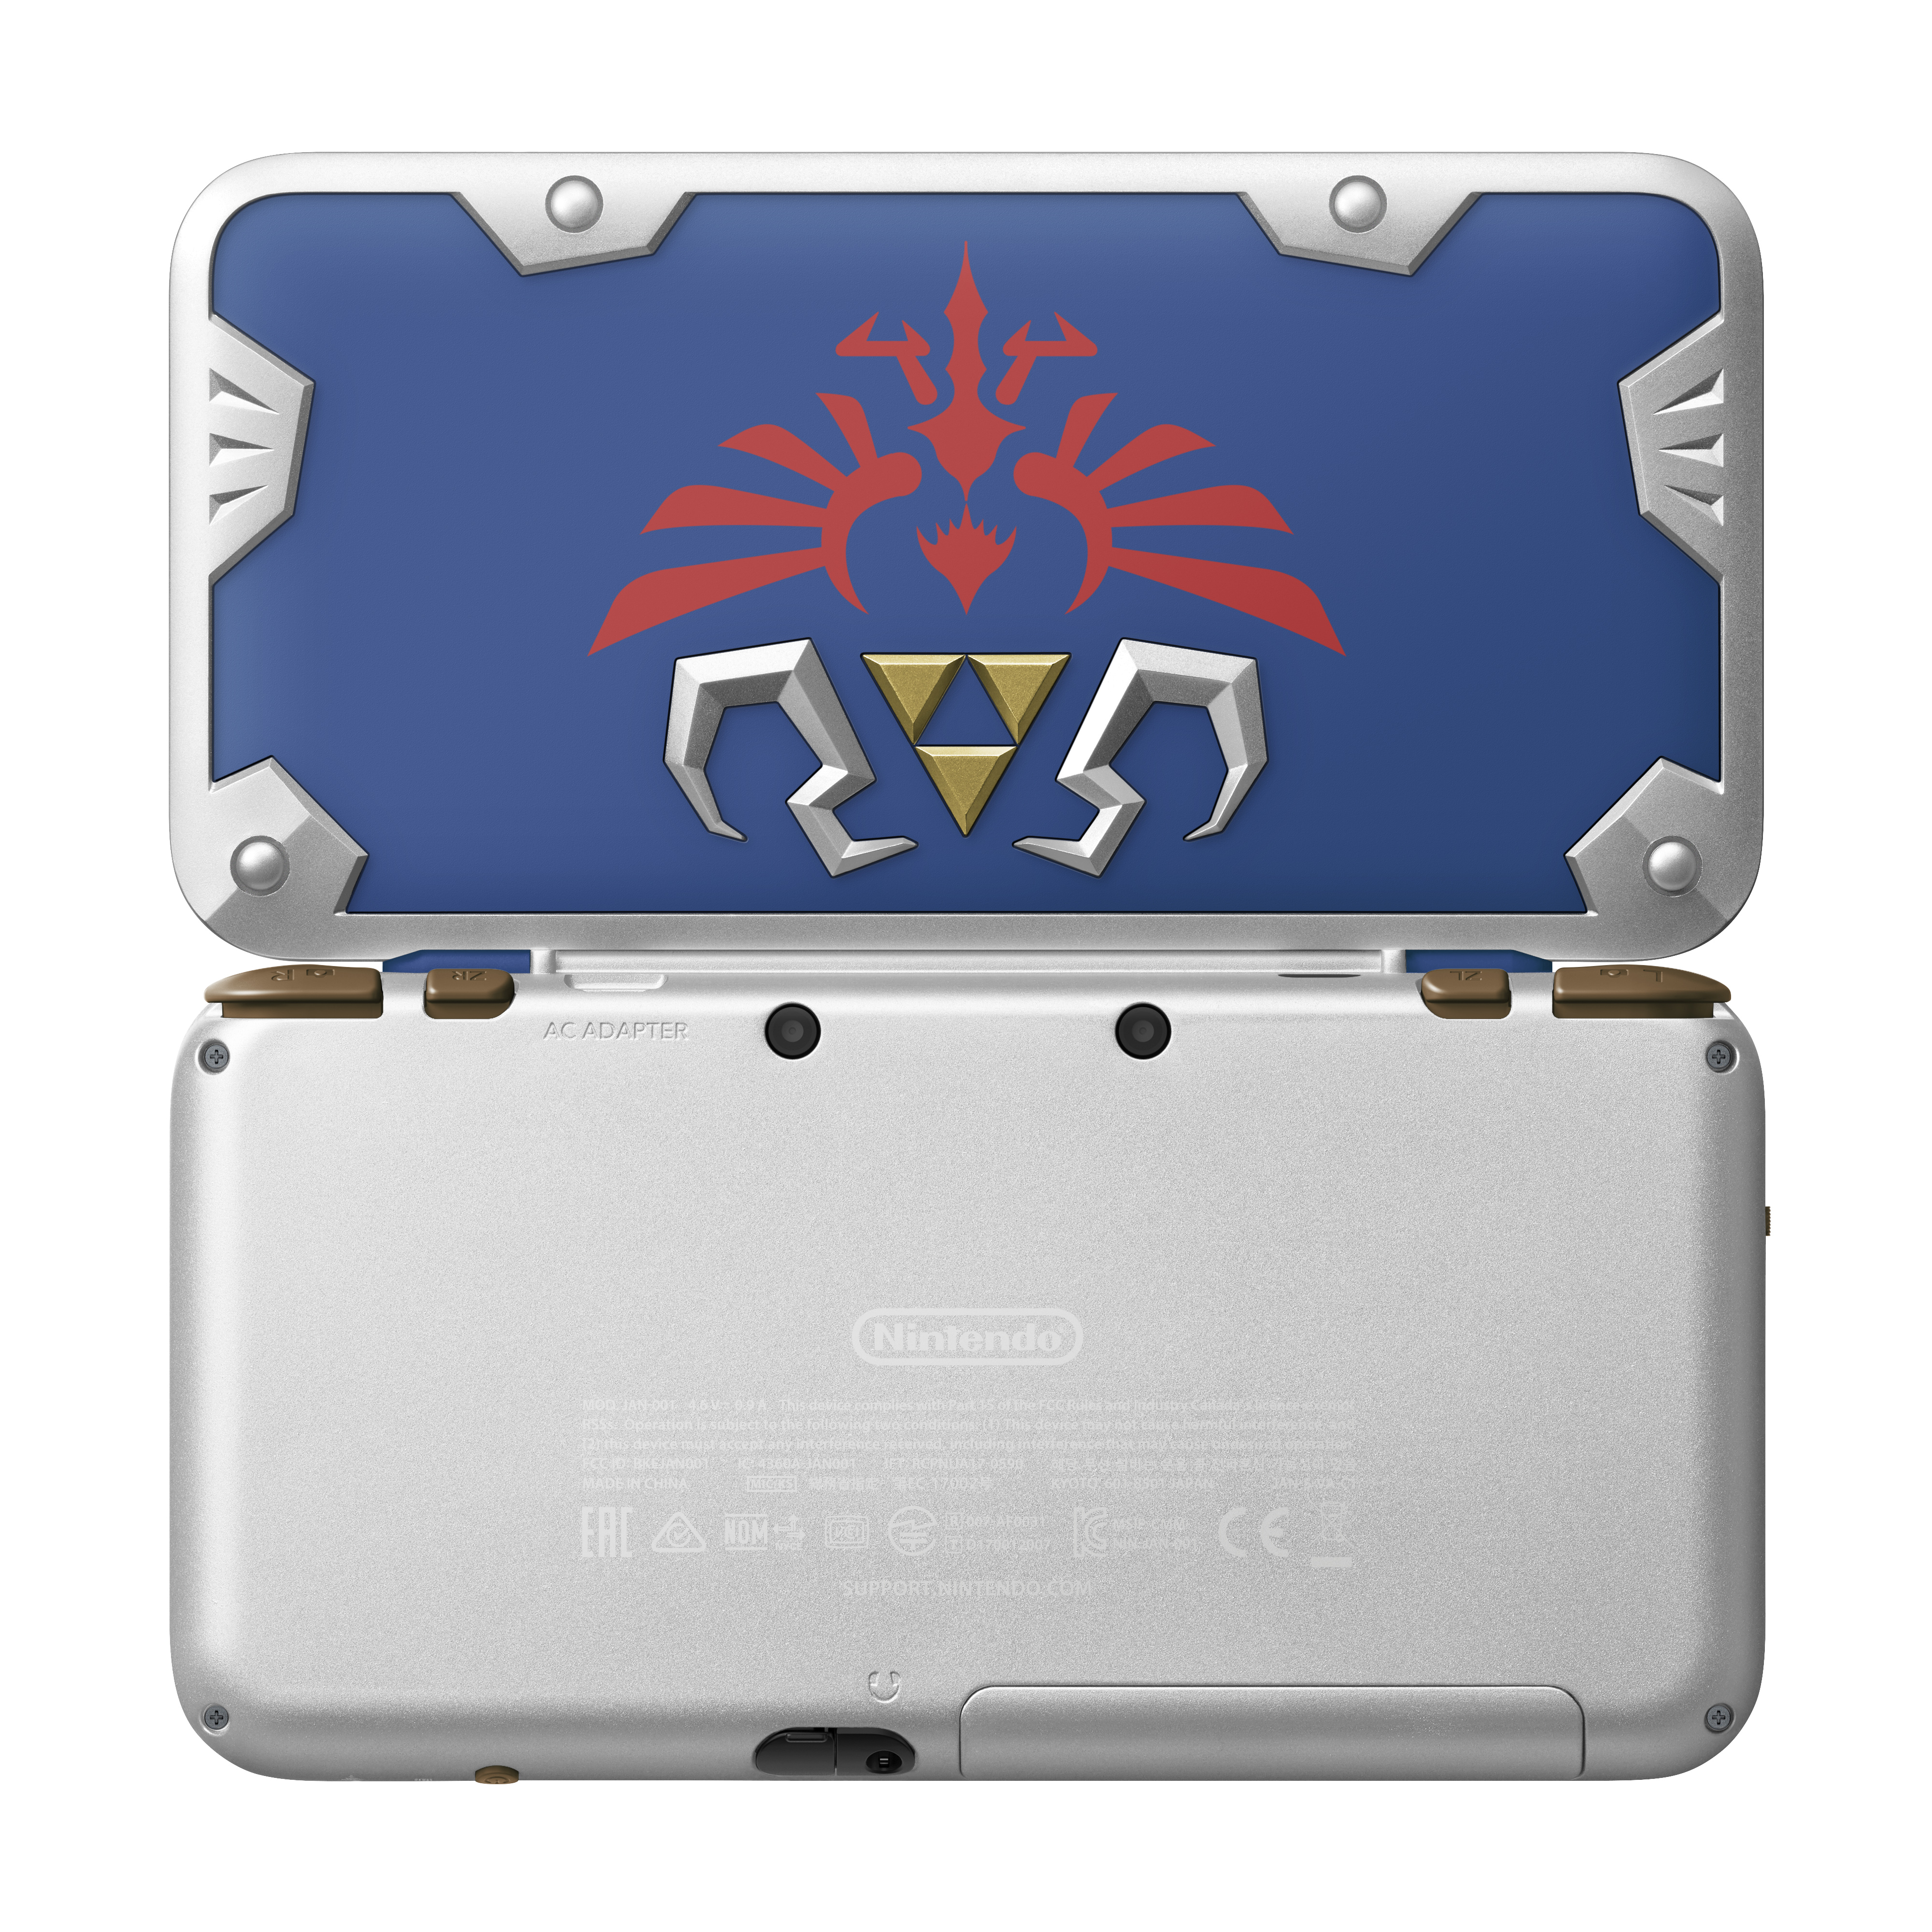 2DS XL Hylian Shield Edition (Nintendo)